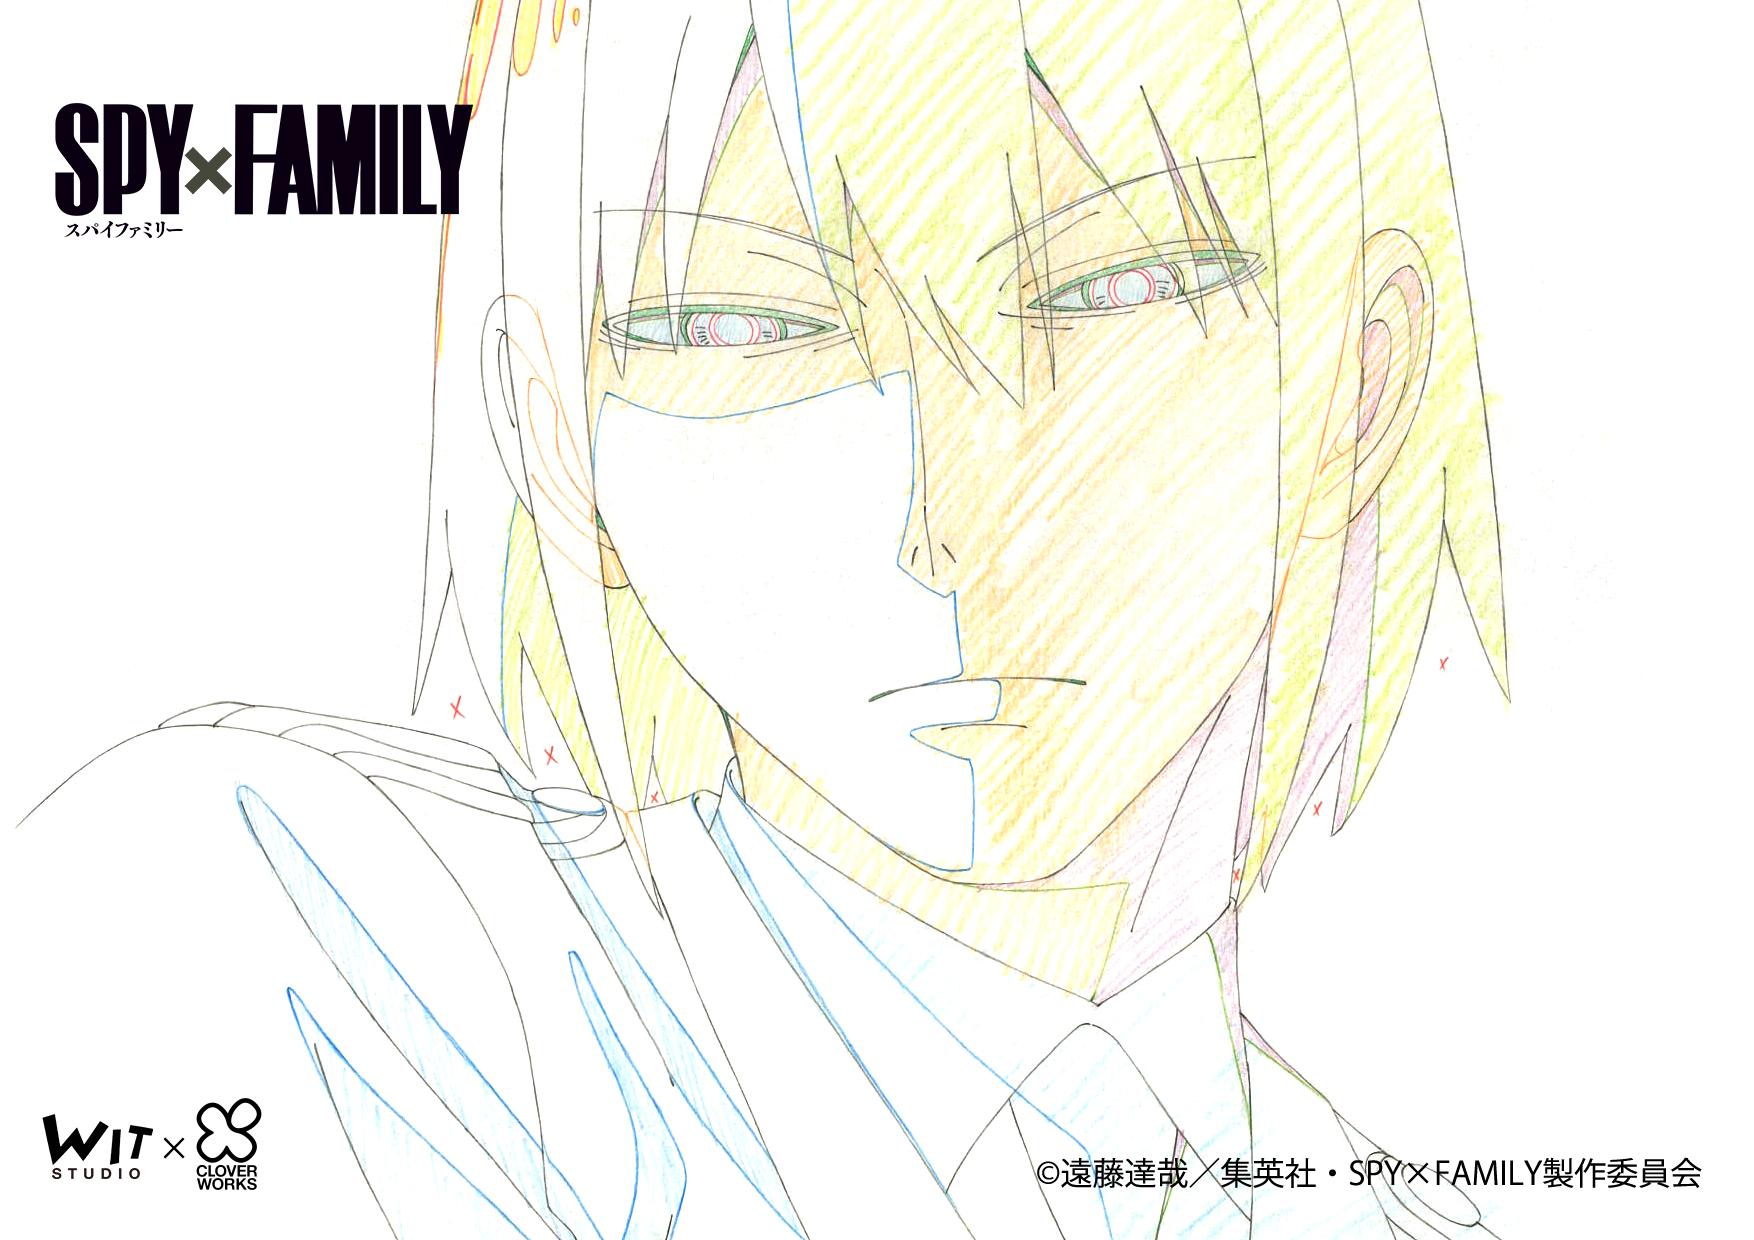 Anime SPY x FAMILY kỷ niệm tập thứ 8 với loạt hình ảnh mới sống ...